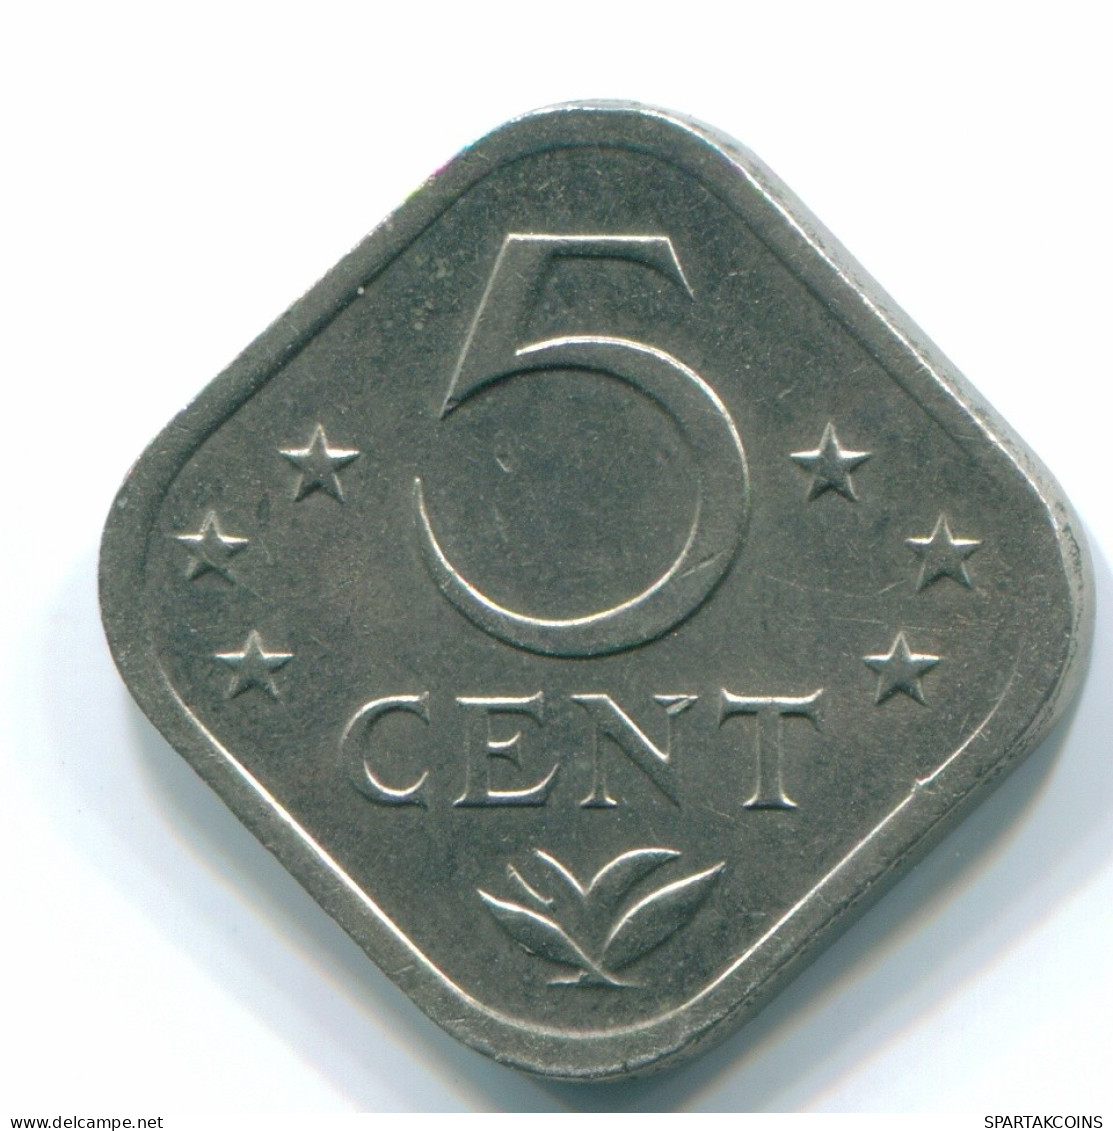 5 CENTS 1978 NETHERLANDS ANTILLES Nickel Colonial Coin #S12280.U.A - Niederländische Antillen